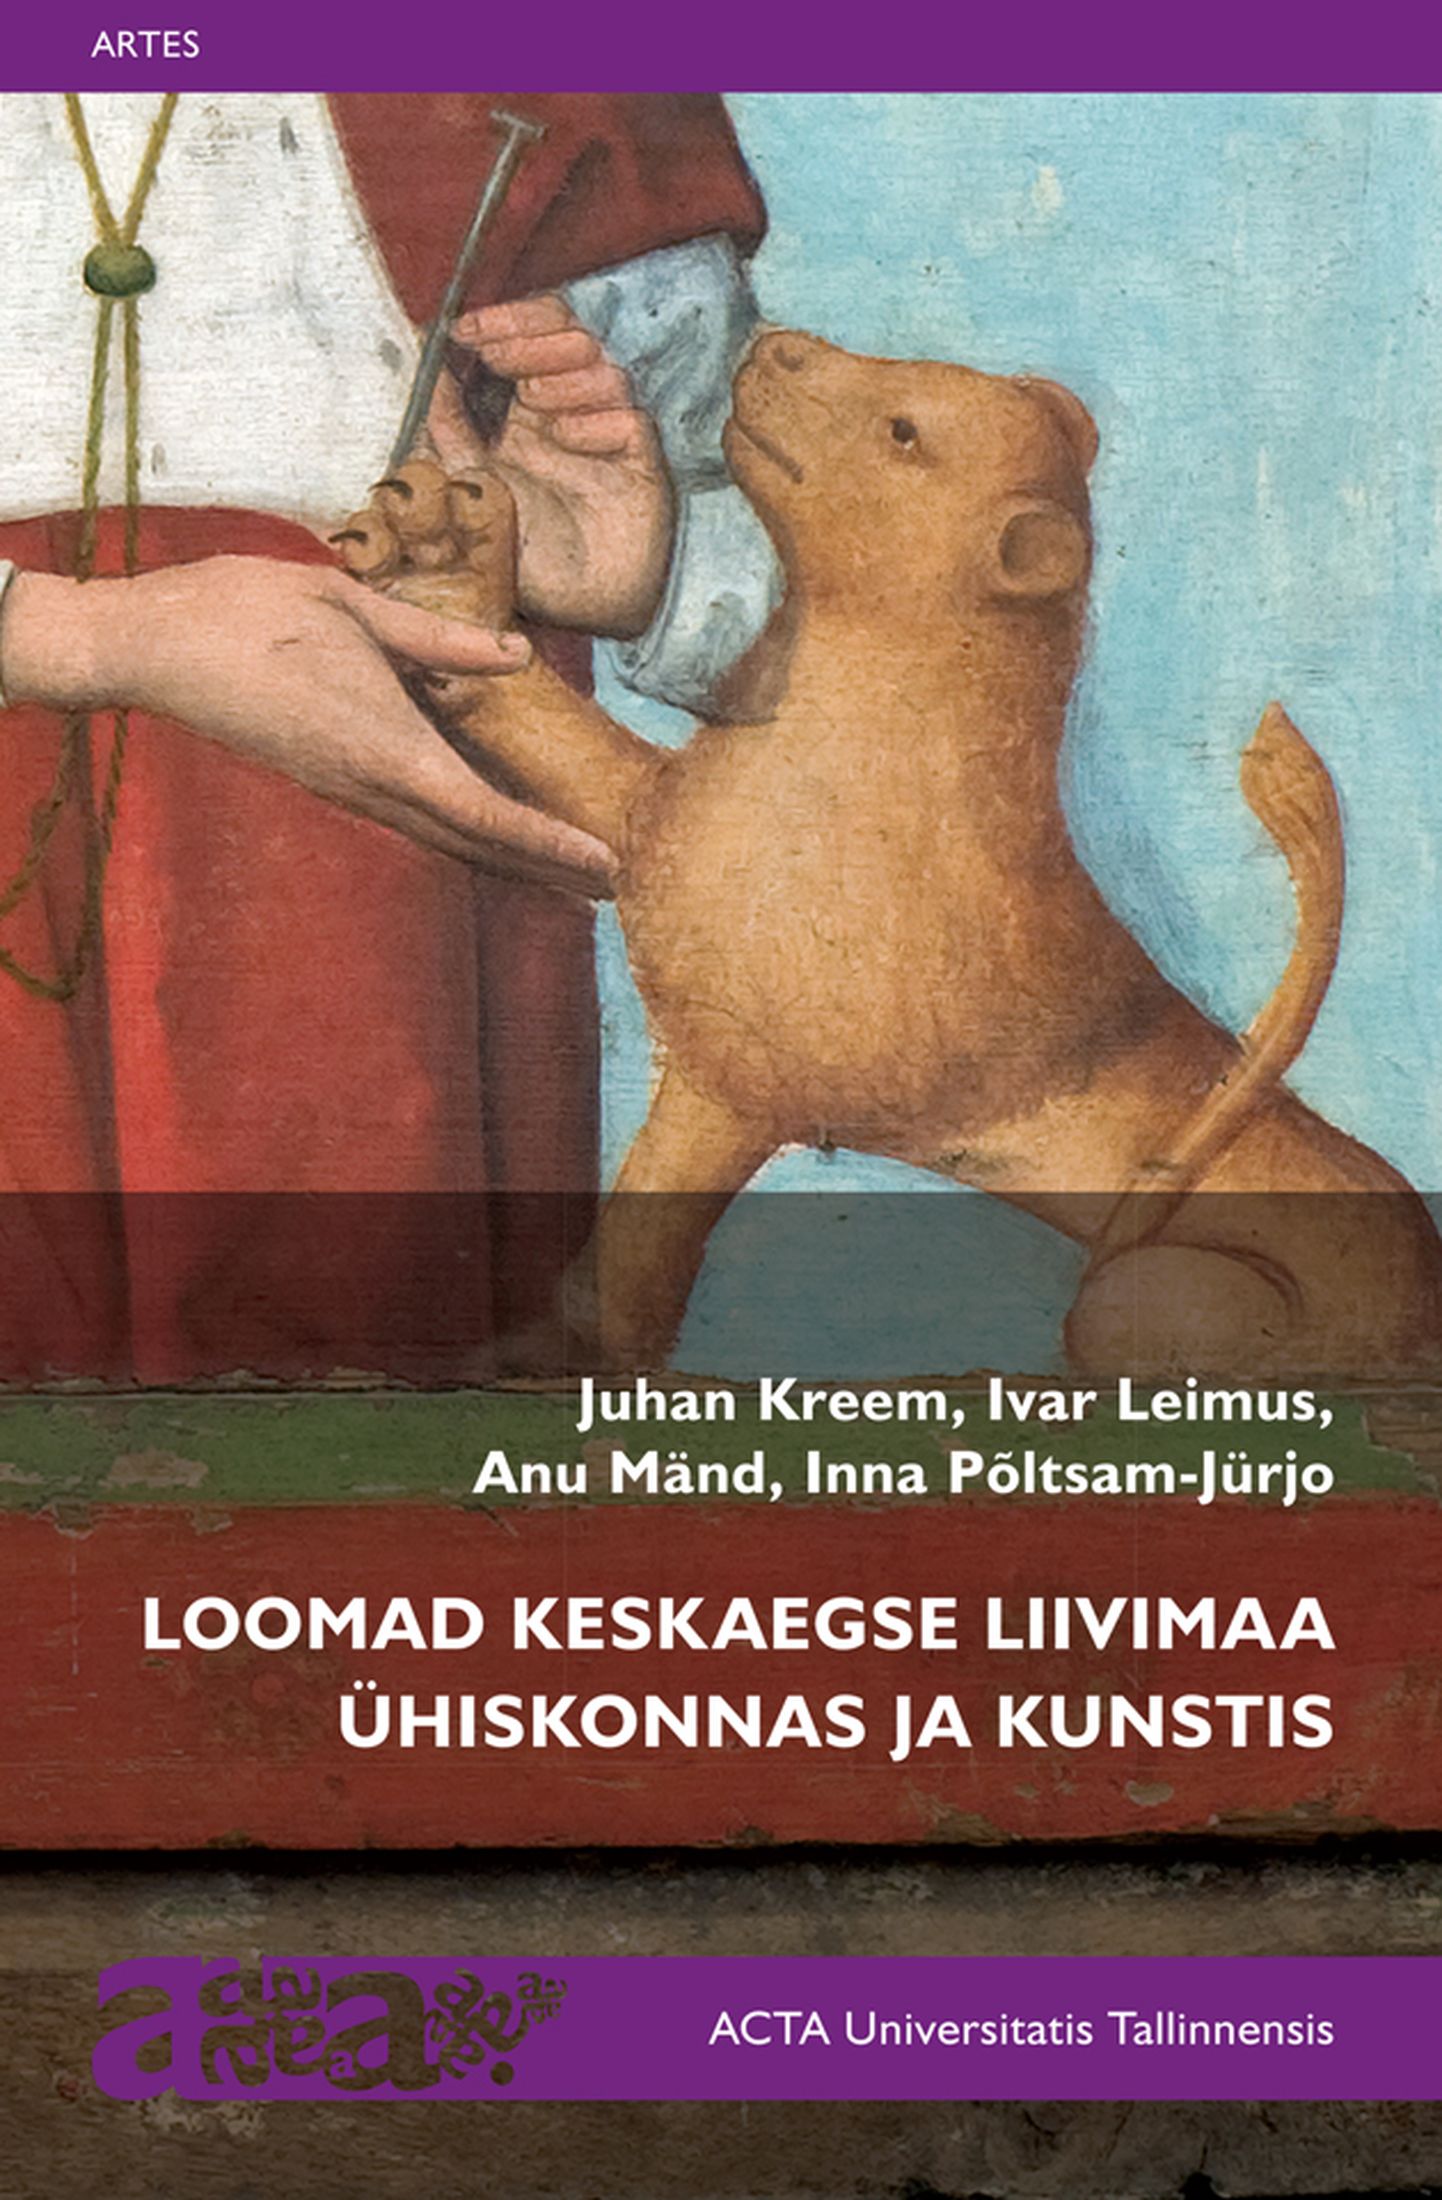 «Loomad keskaegse Liivimaa ühiskonnas ja kunstis».